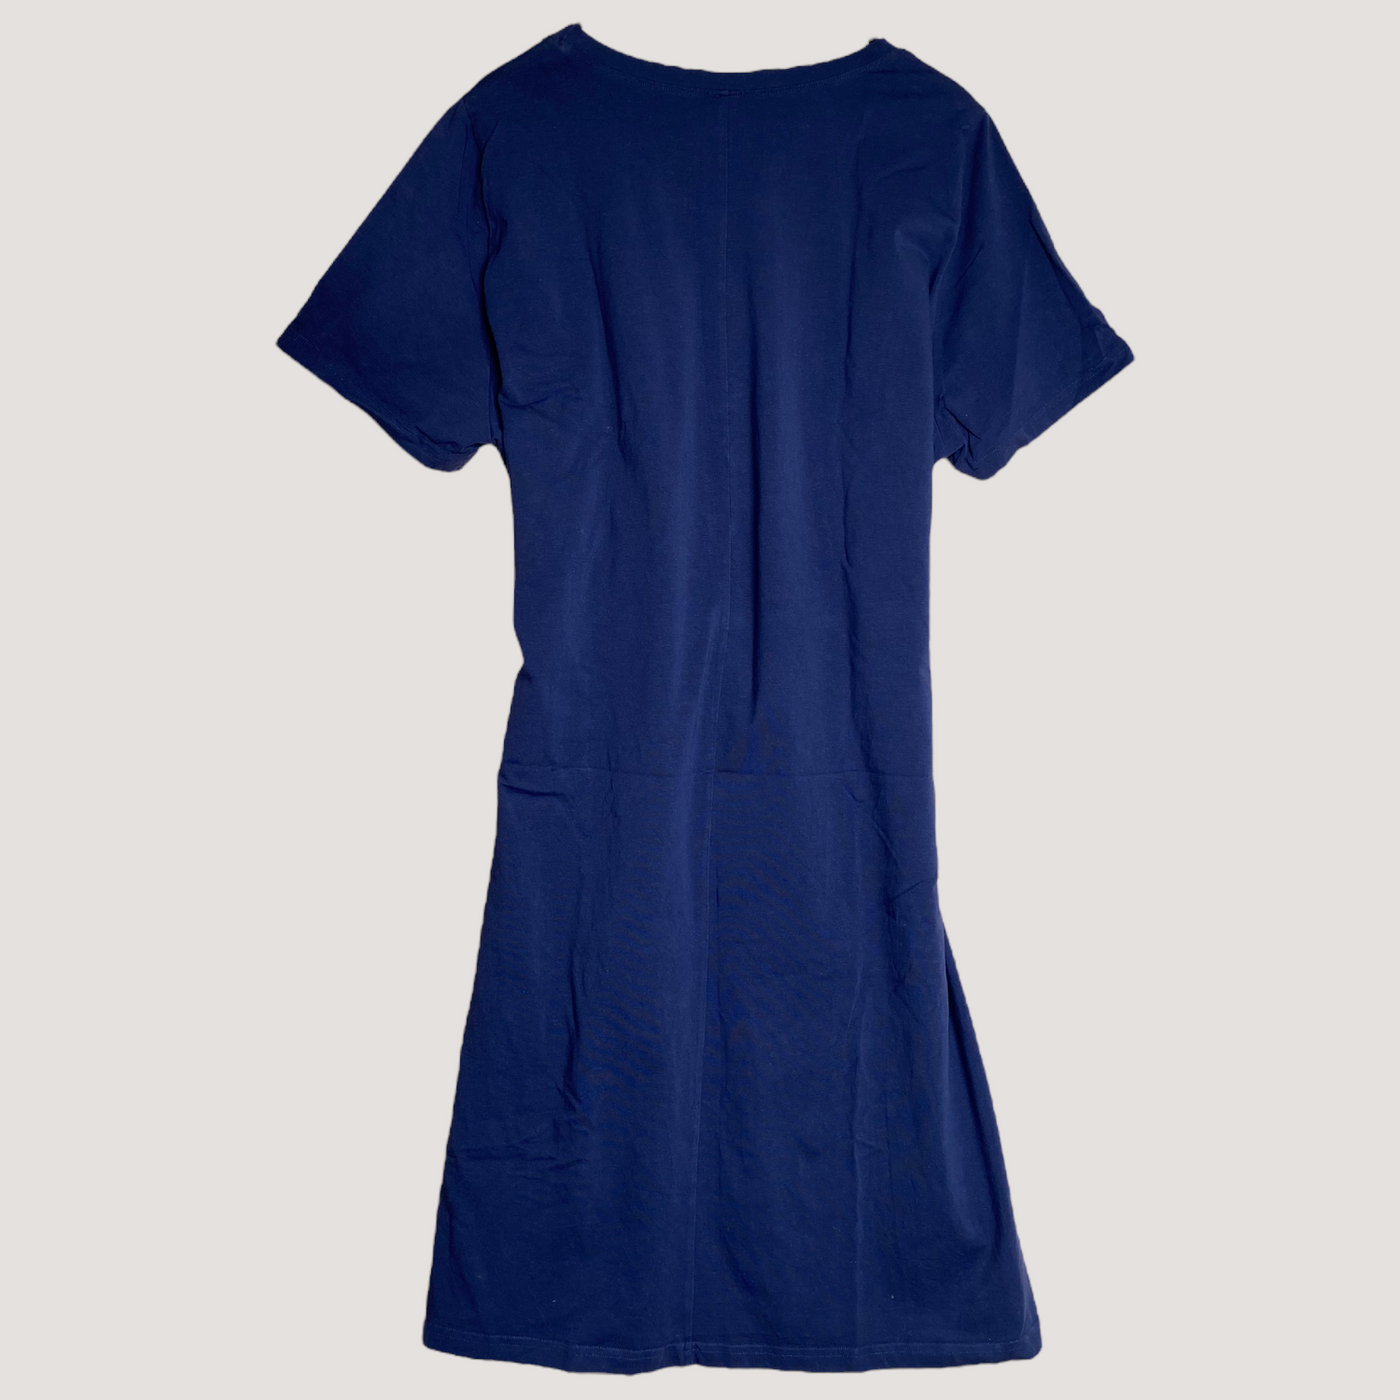 Kaiko t-shirt belted dress, midnight blue | woman XXL